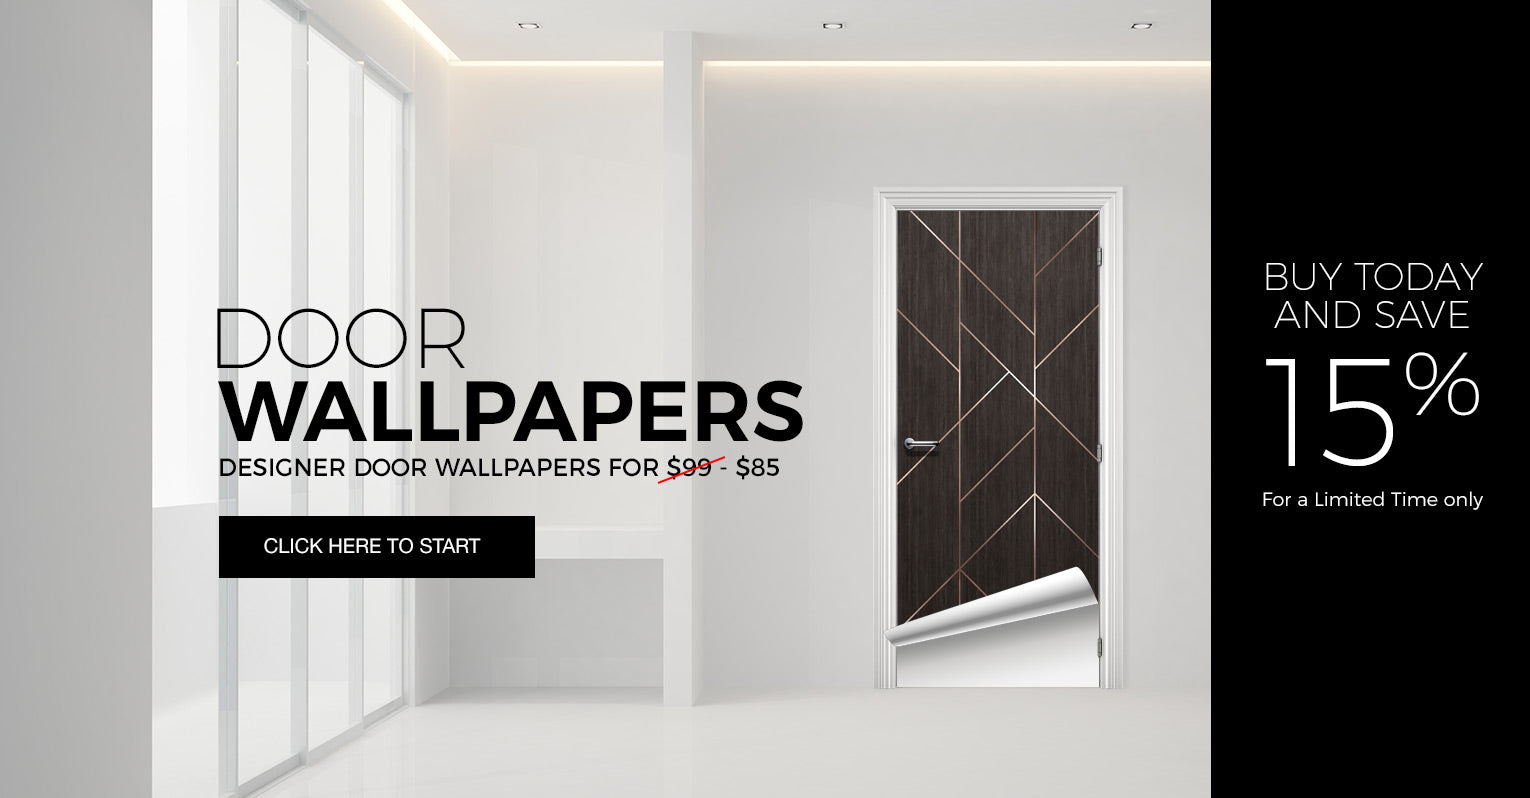 door wallpapers vinyl door wallpapers for home vinyl wood door wallpapers for sale doortouch doortouch com